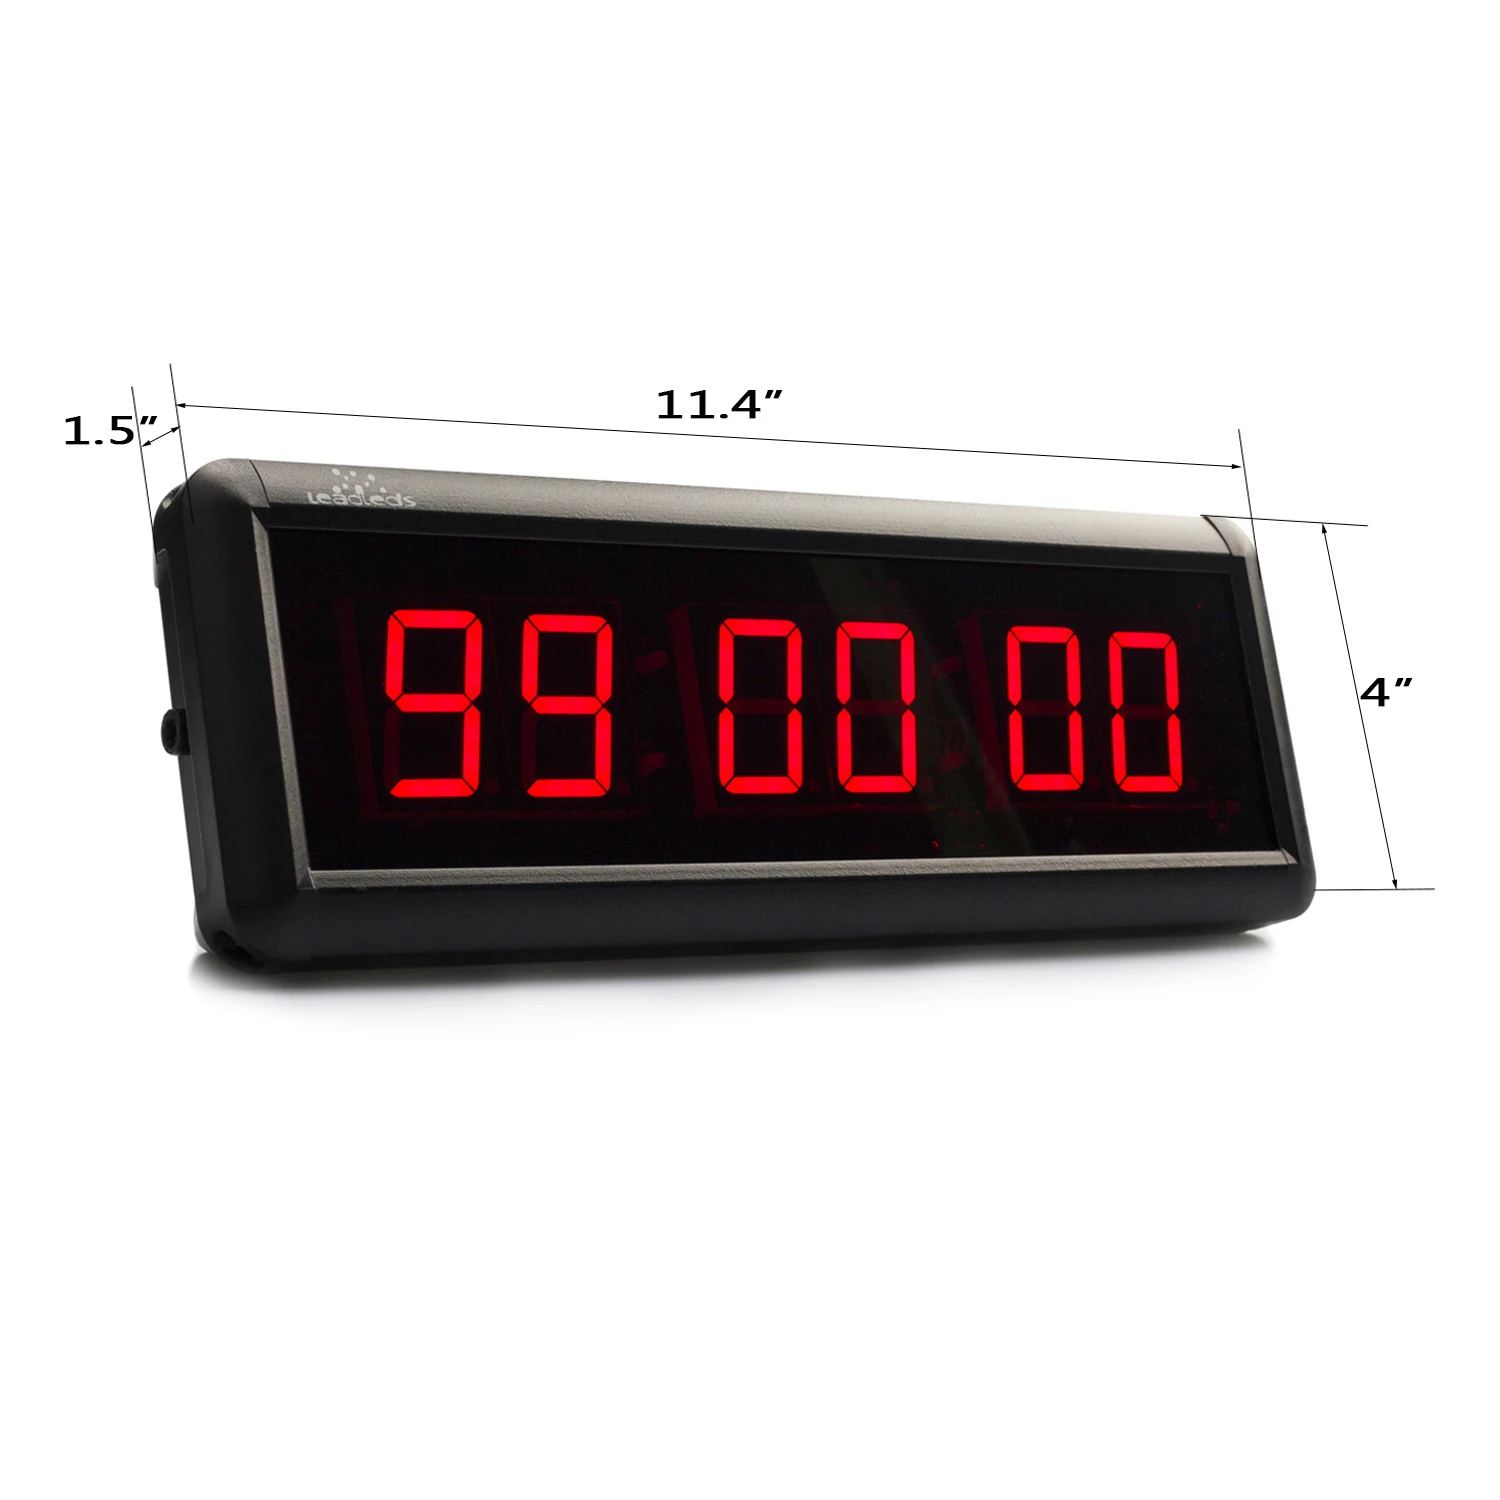 Пульт управления таймер. 70-0530 Rexant цифровые часы с таймером обратного отсчета RX-100а. Таймер обратного отсчета tm1638. Таймер обратного отсчета PS-110. Цифровой светодиодный секундомер.